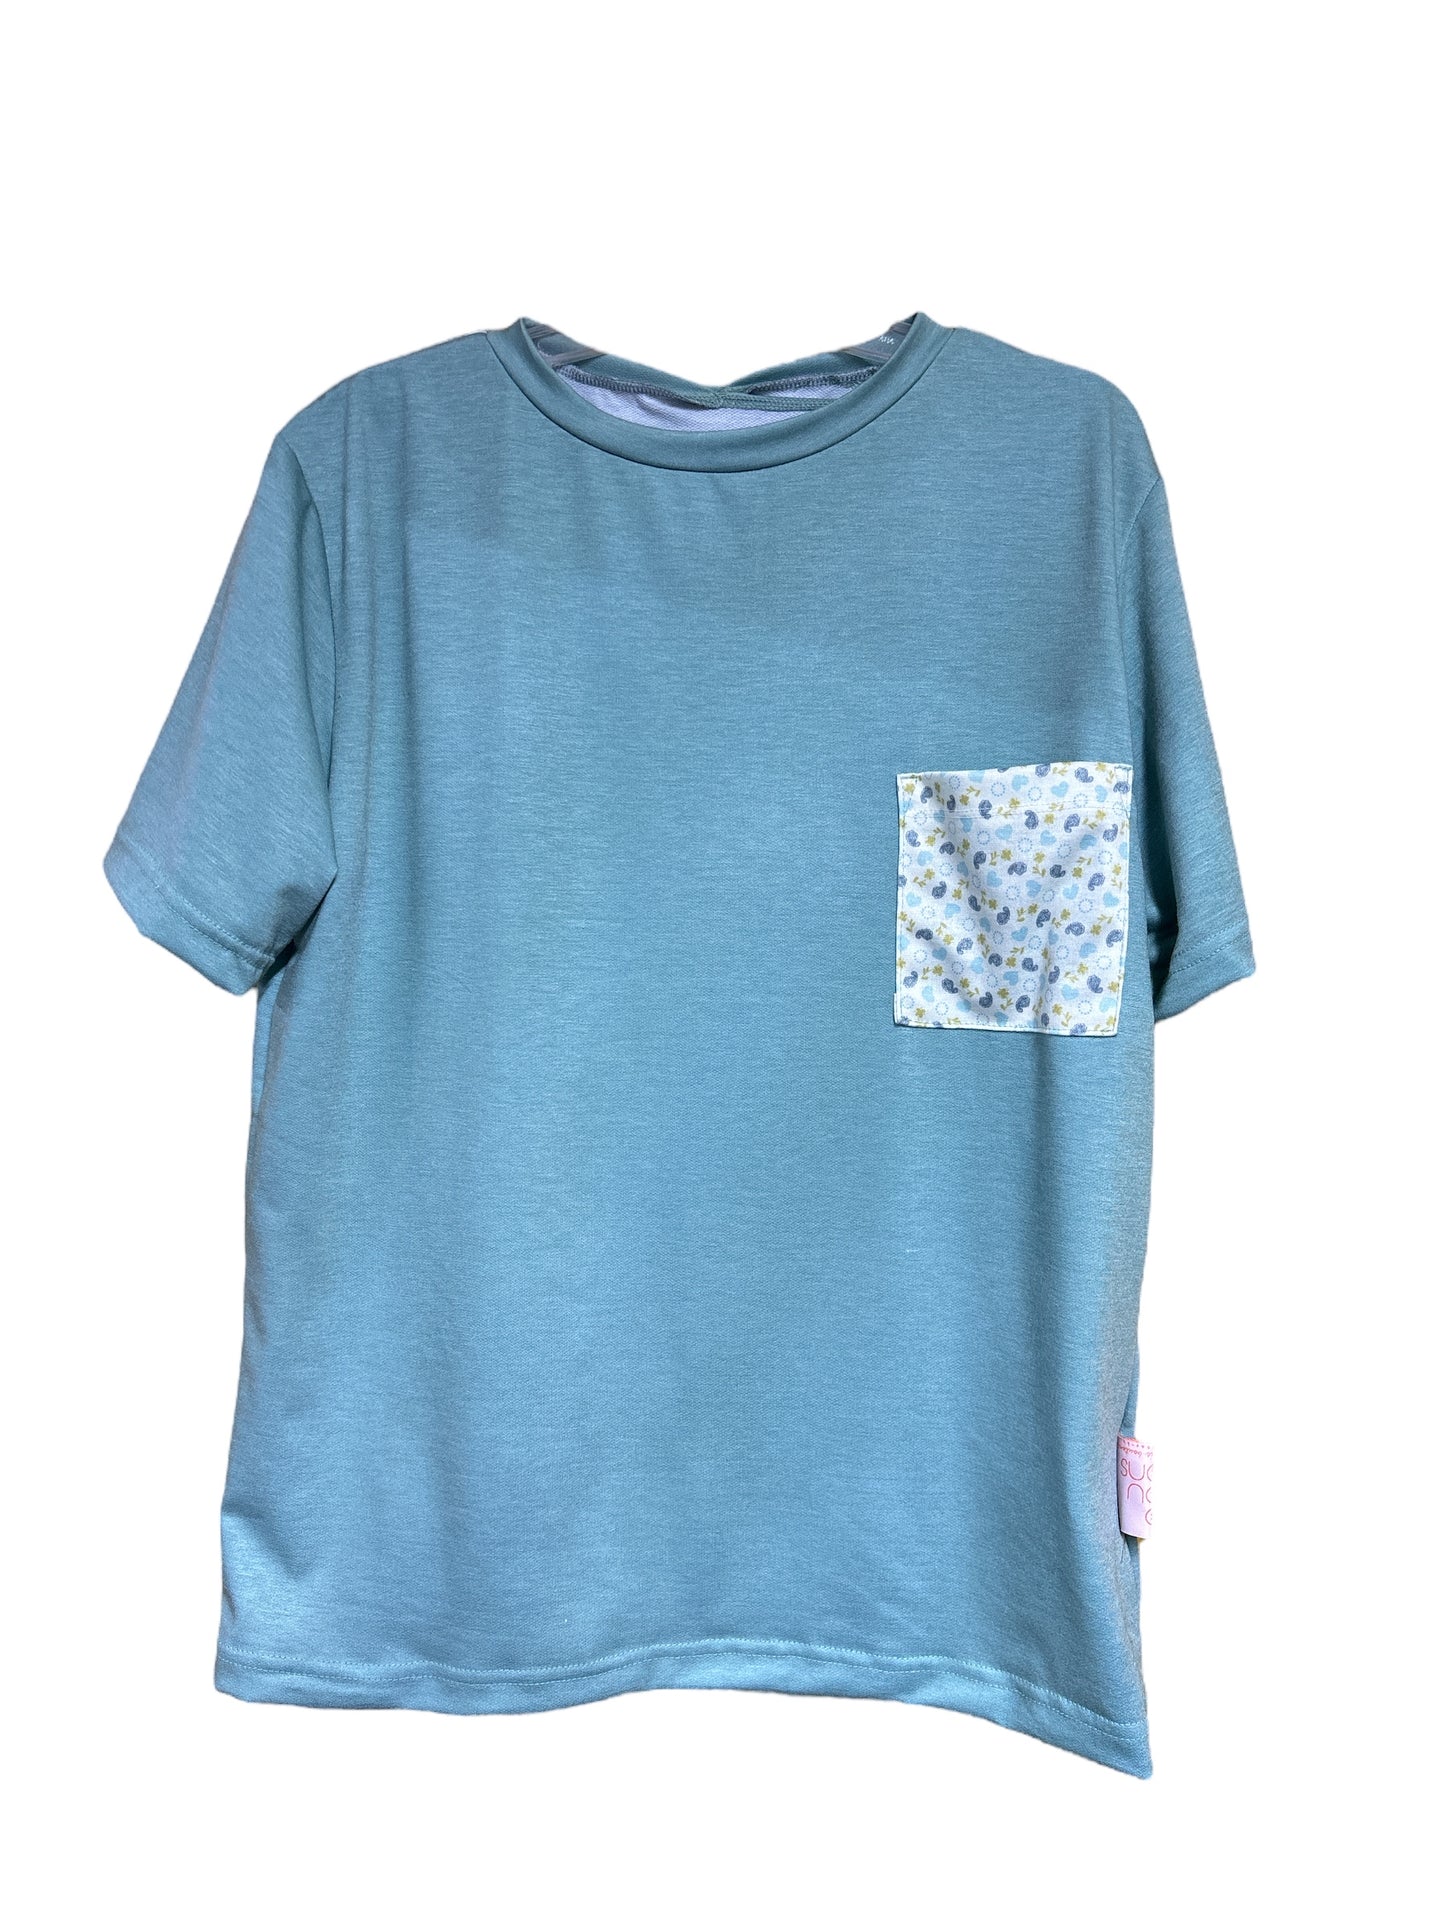 Tee-shirt adapté pour homme | vert pomme,poche contrastante |A3B